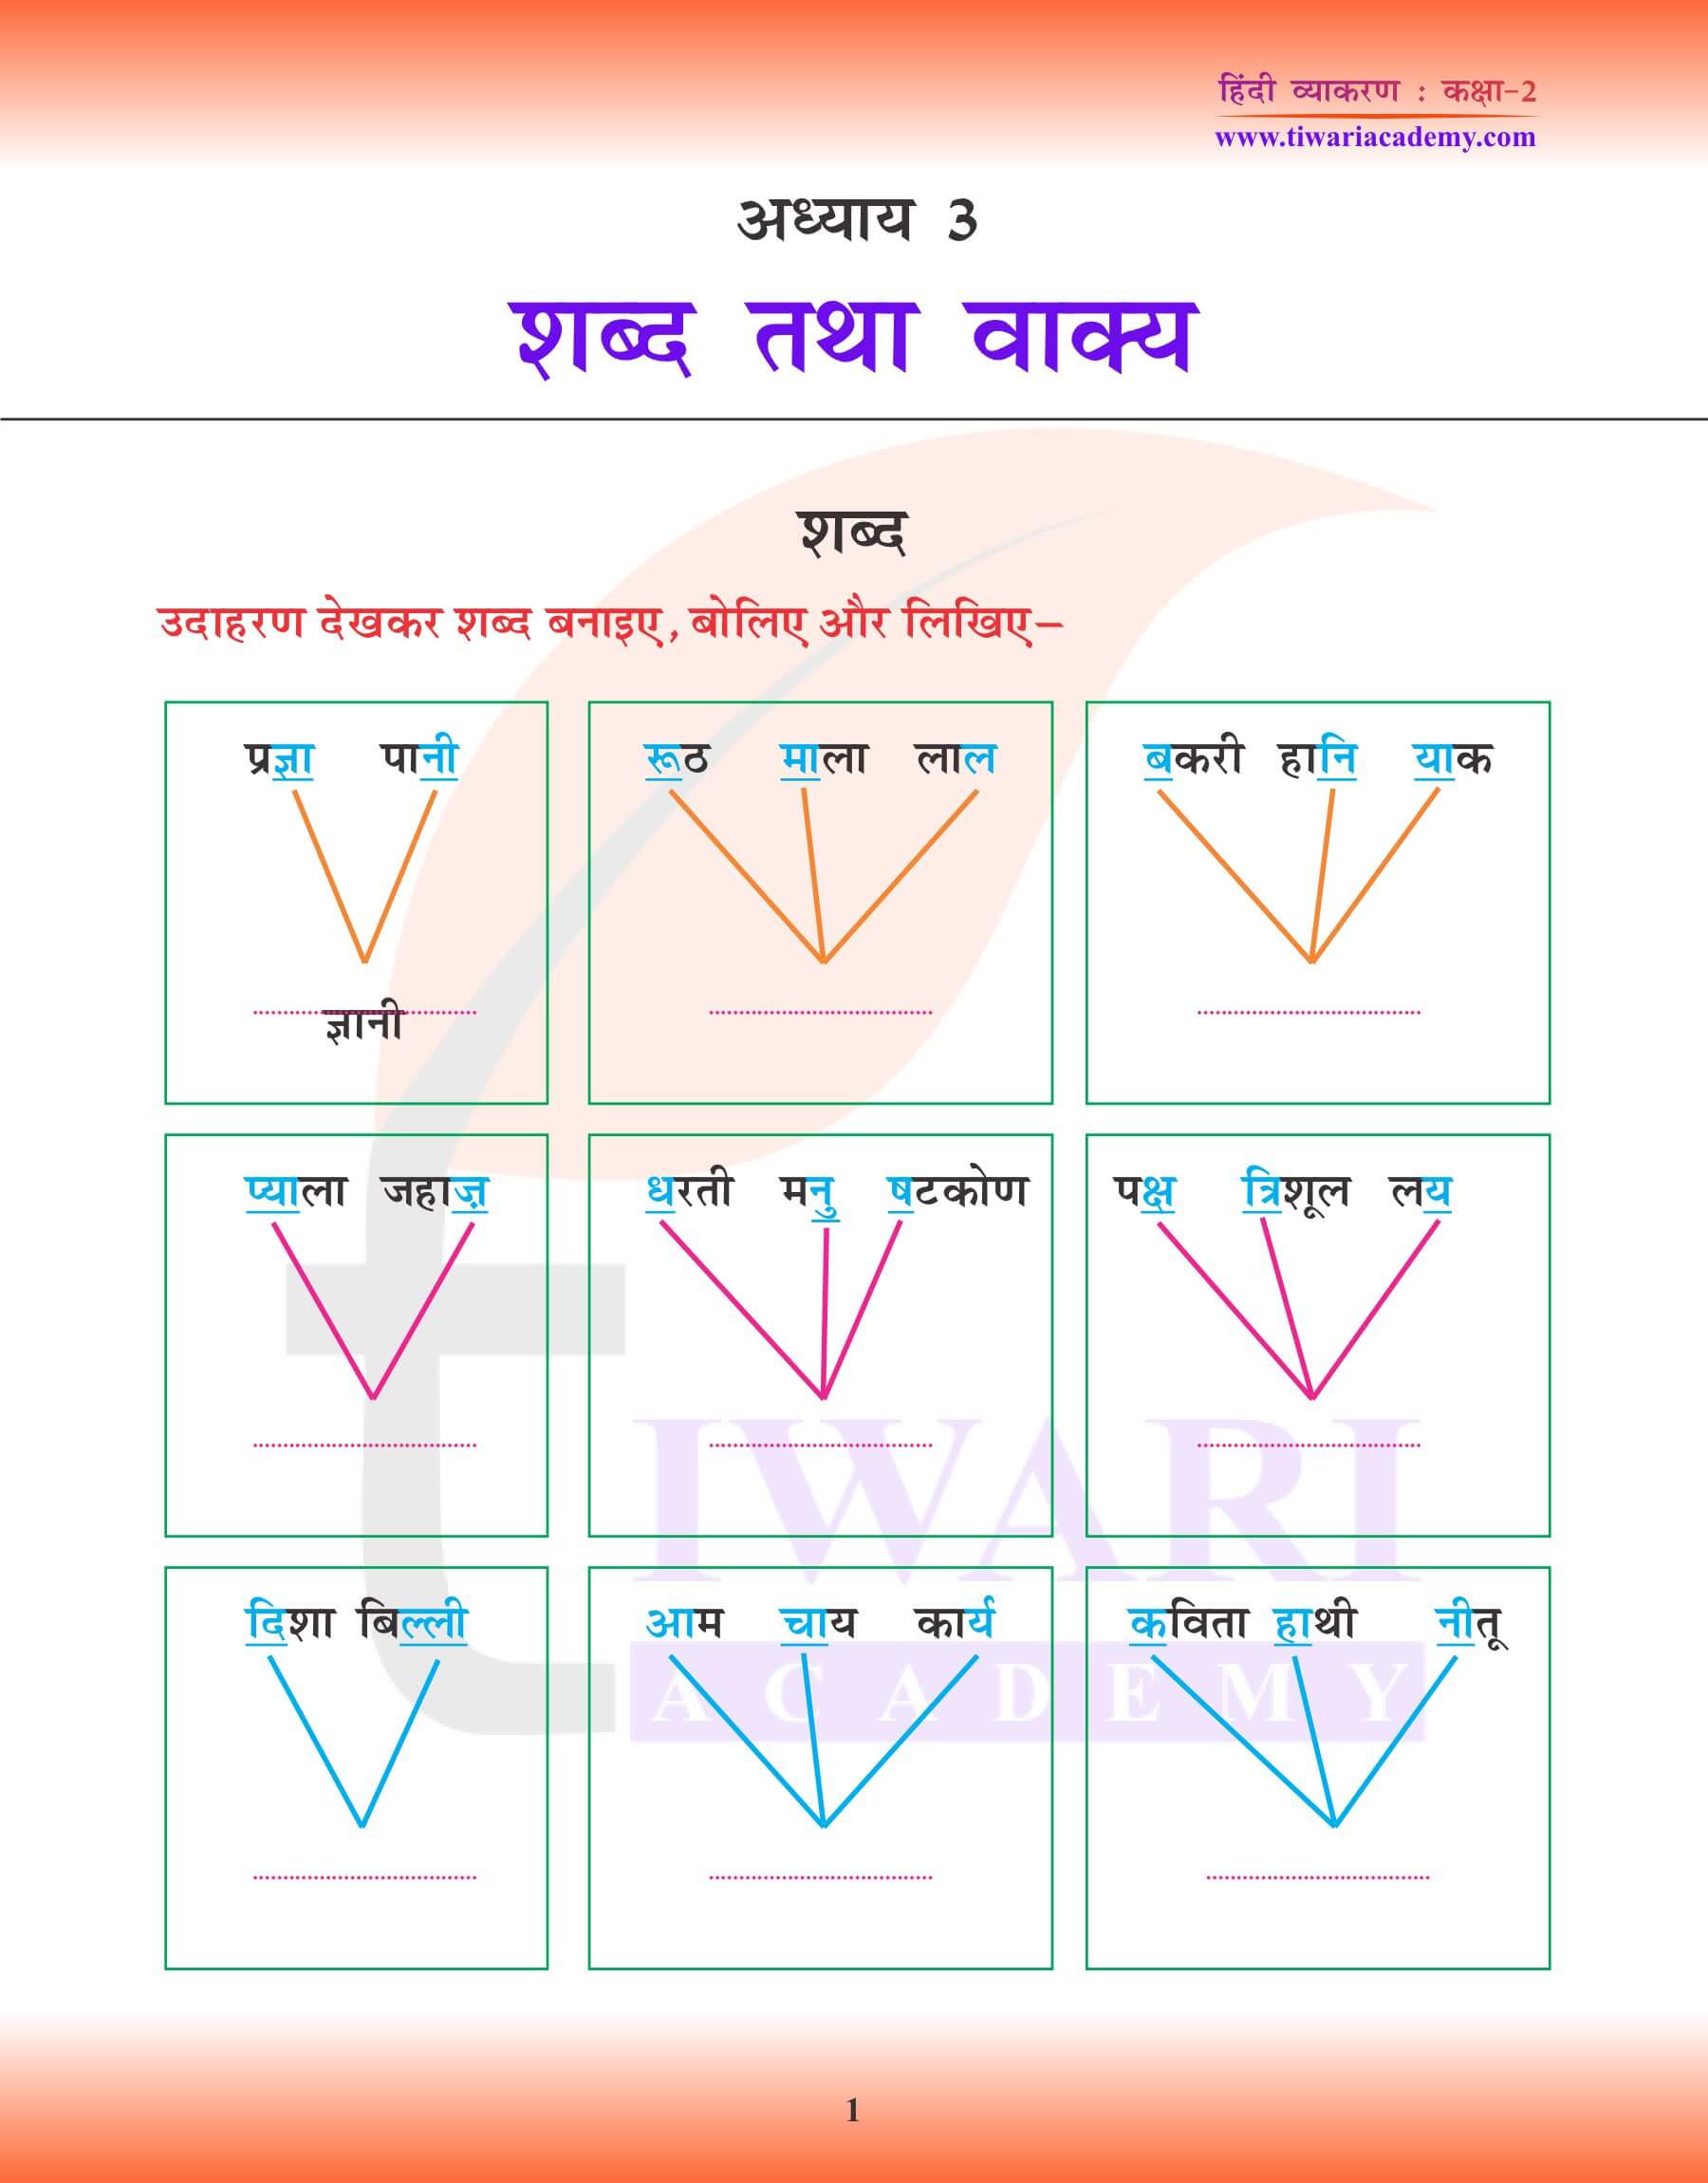 कक्षा 2 हिंदी व्याकरण पाठ 3 शब्द तथा वाक्य